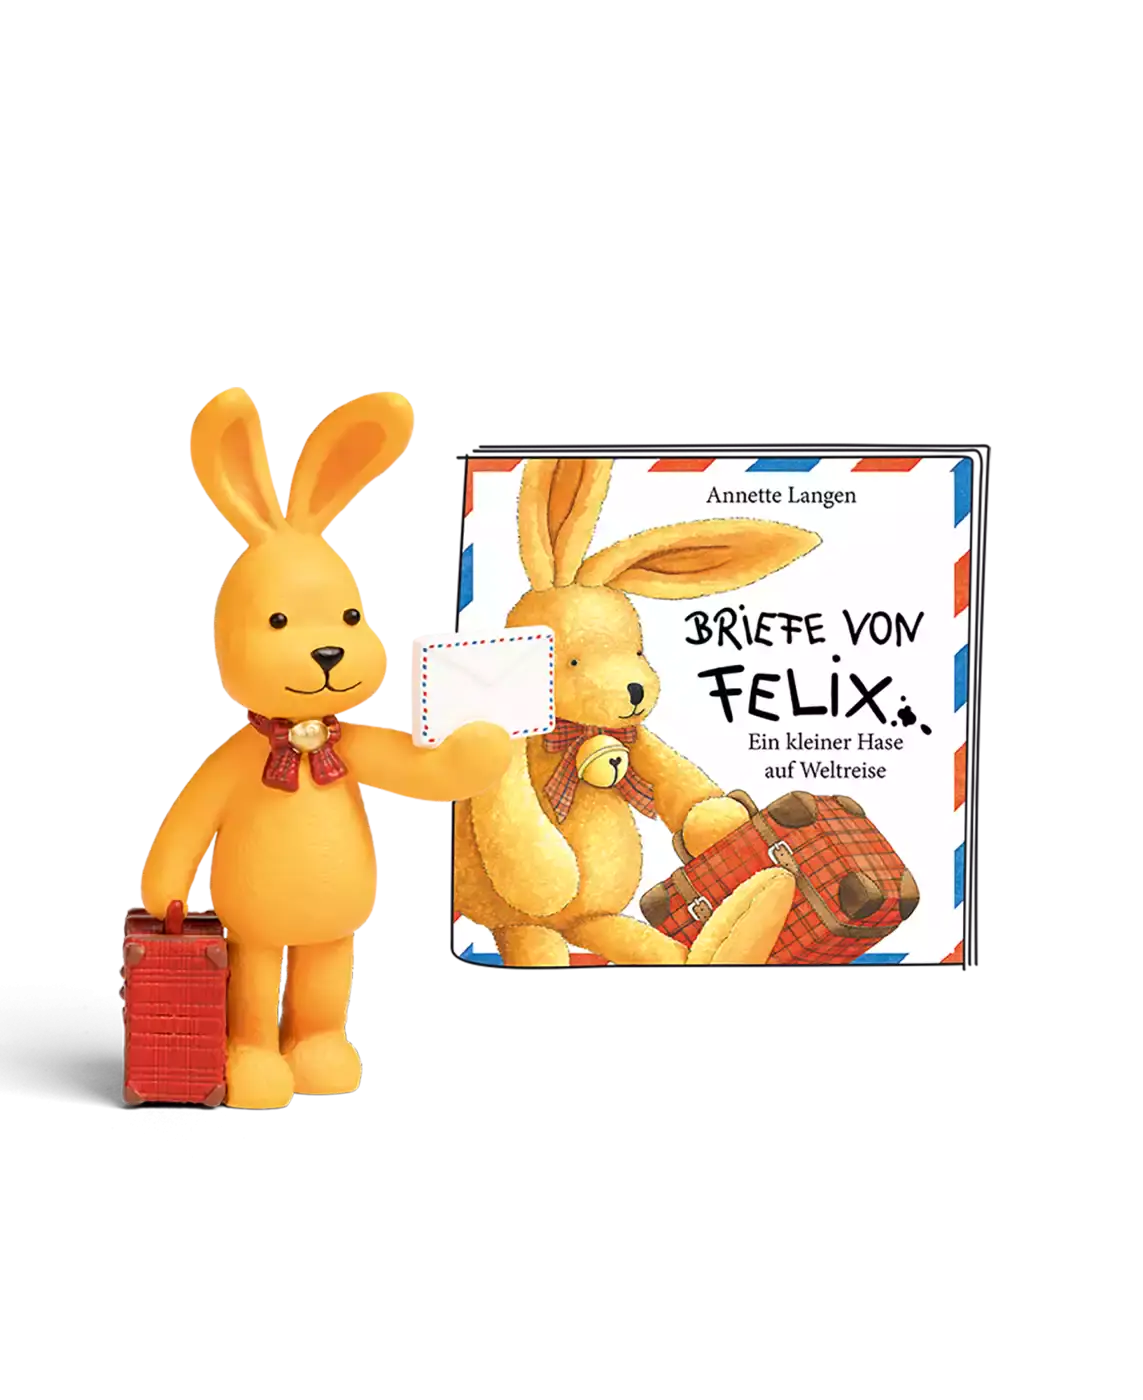 Felix - Briefe von Felix tonies 2000572867665 3